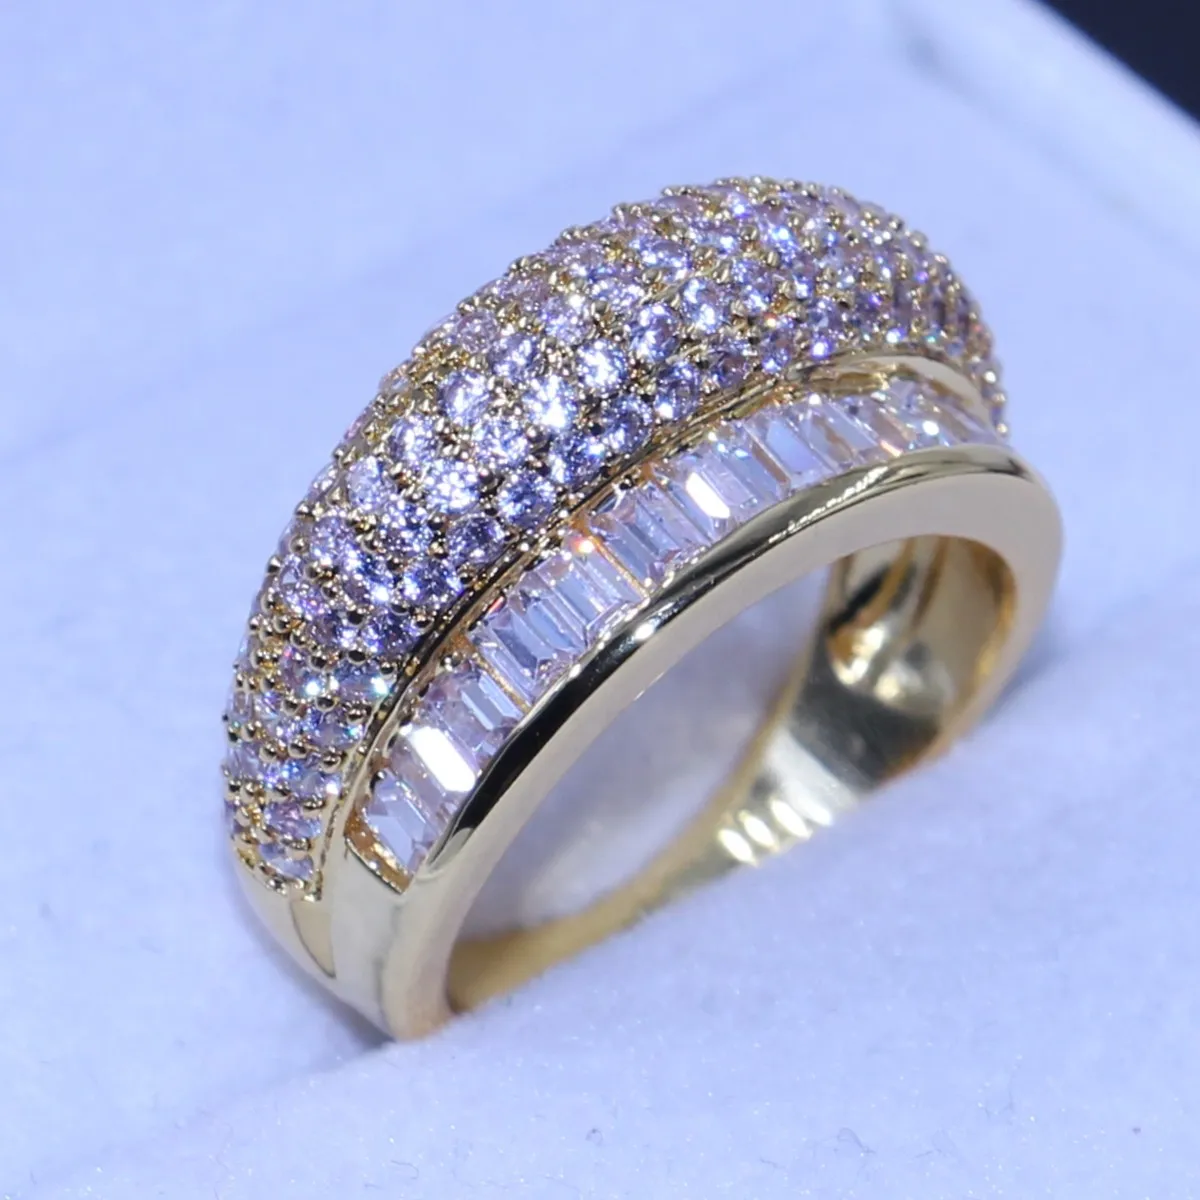 サイズ6/7/8新しい到着トップ販売高級ジュエリー10ktイエローゴールド充填指輪舗装ホワイトサファイアスパークリングCzダイヤモンド女性リング